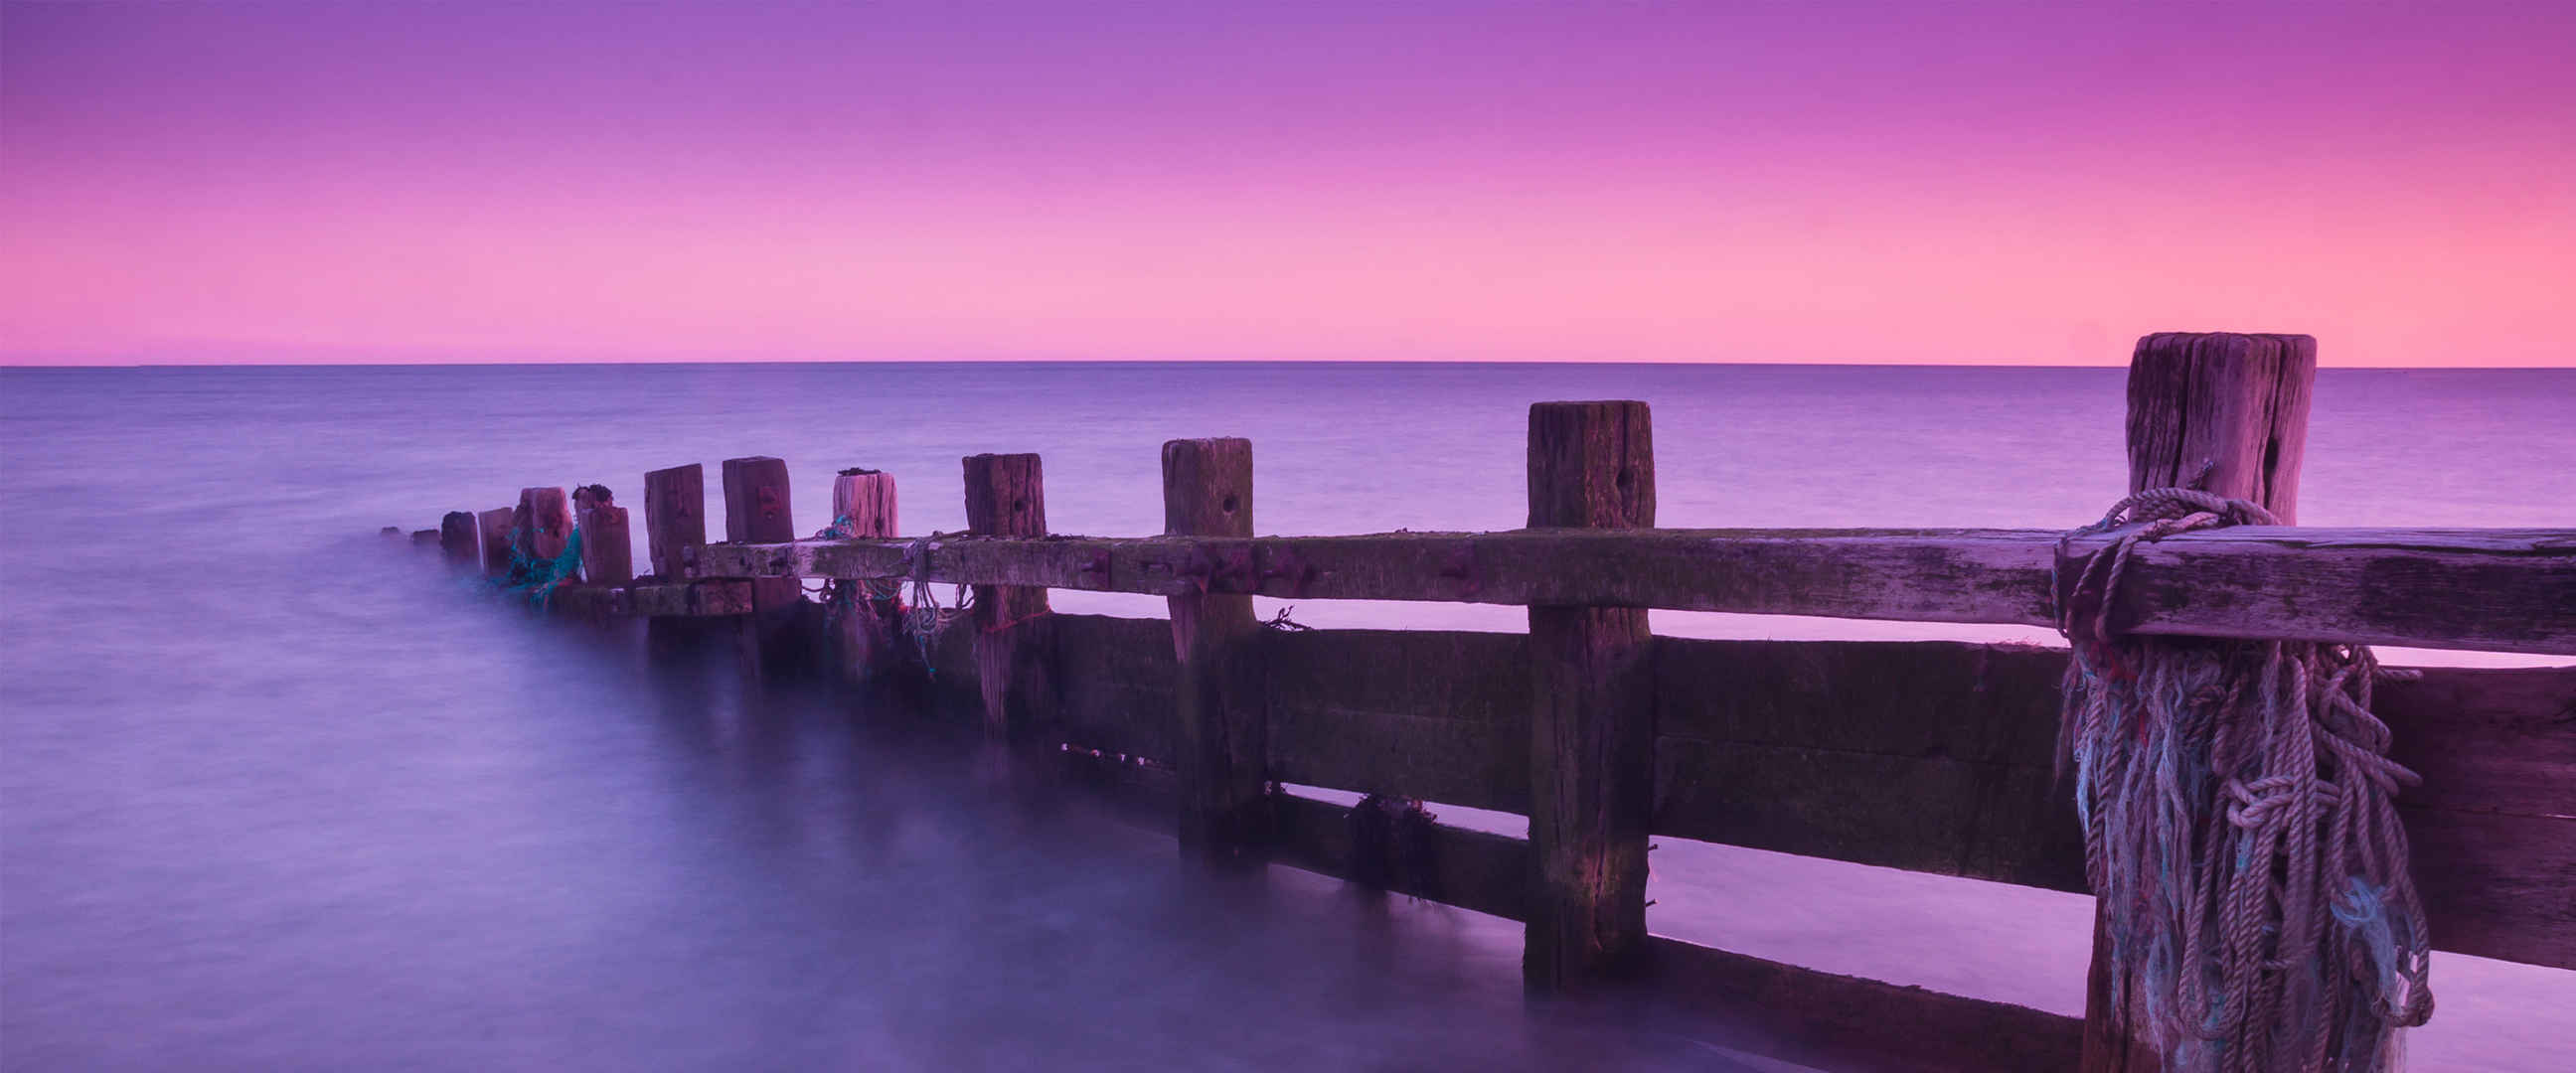 木桥深入海里紫色高清壁纸-